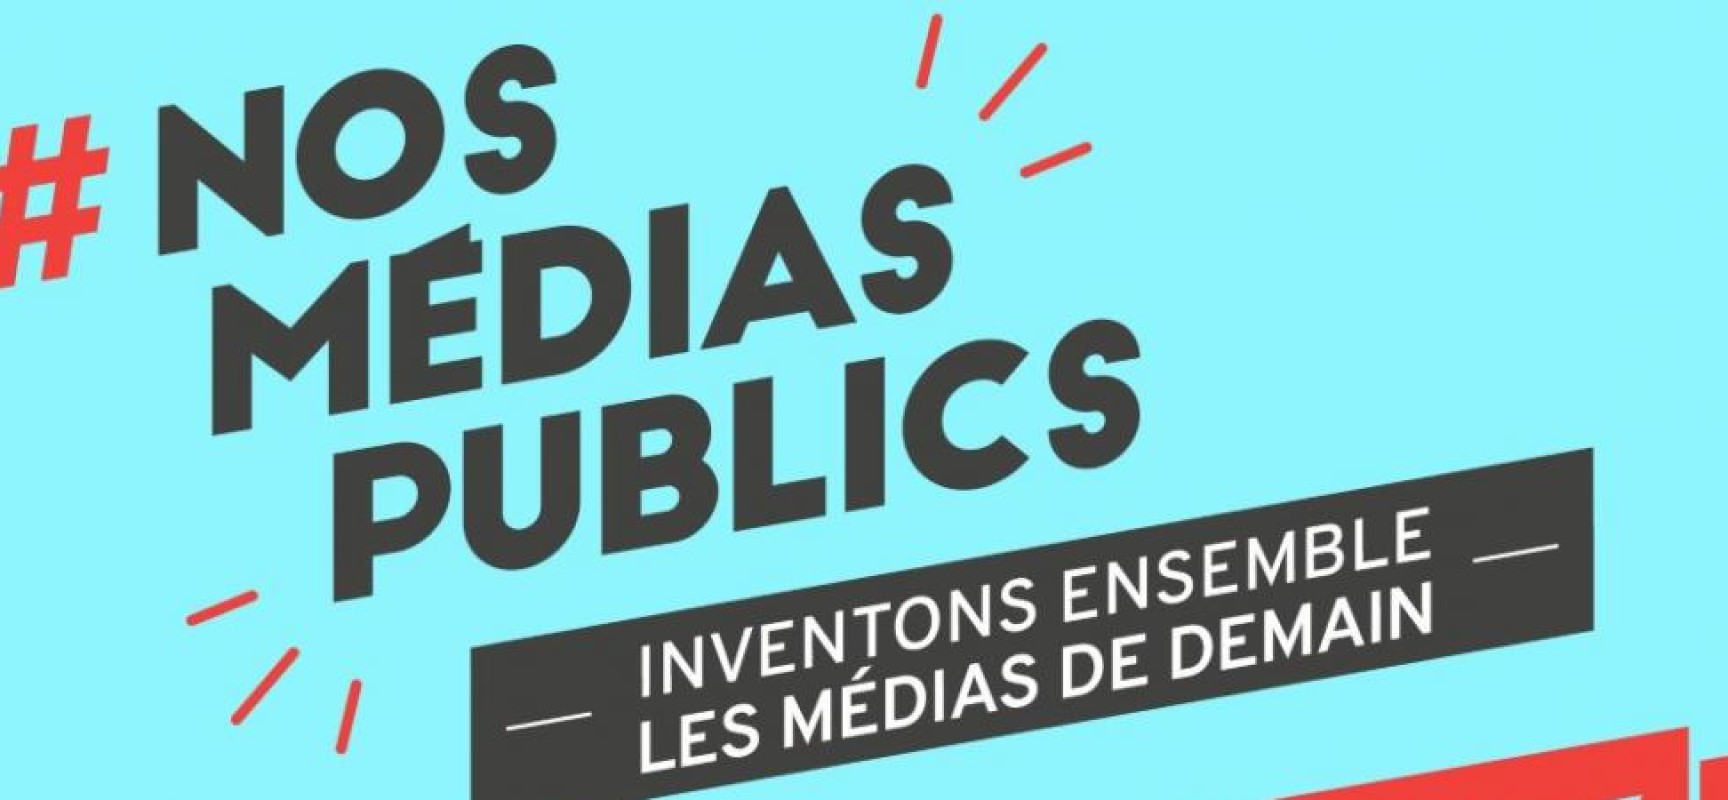 #NosMédiasPublics : participez à la consultation citoyenne pour imaginer les médias de demain – Septembre 2020